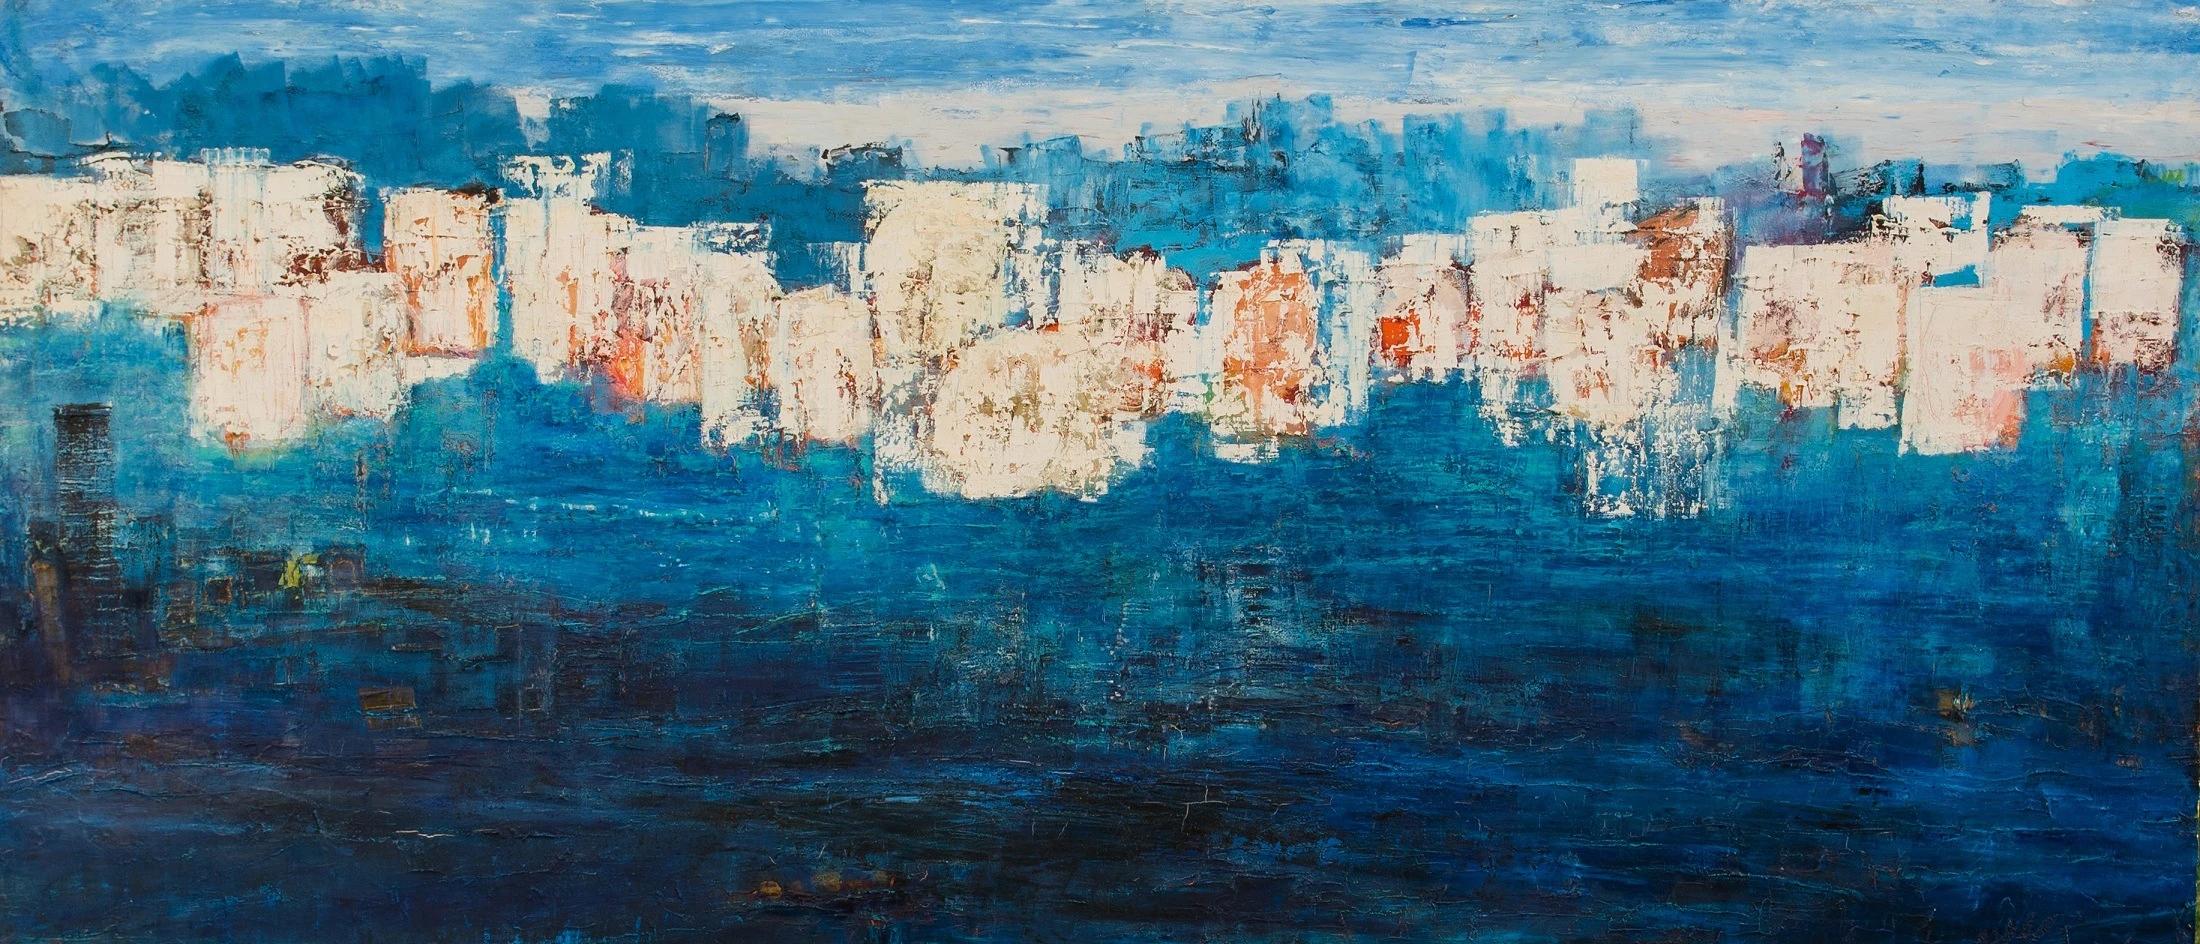 Peinture abstraite technique mixte Submerged de 67" x 149" pouces par Ahmed Farid

techniques mixtes sur toile

Né en 1950 au Caire, en Égypte, où il vit et travaille actuellement, Farid est un peintre égyptien autodidacte qui a suivi une formation